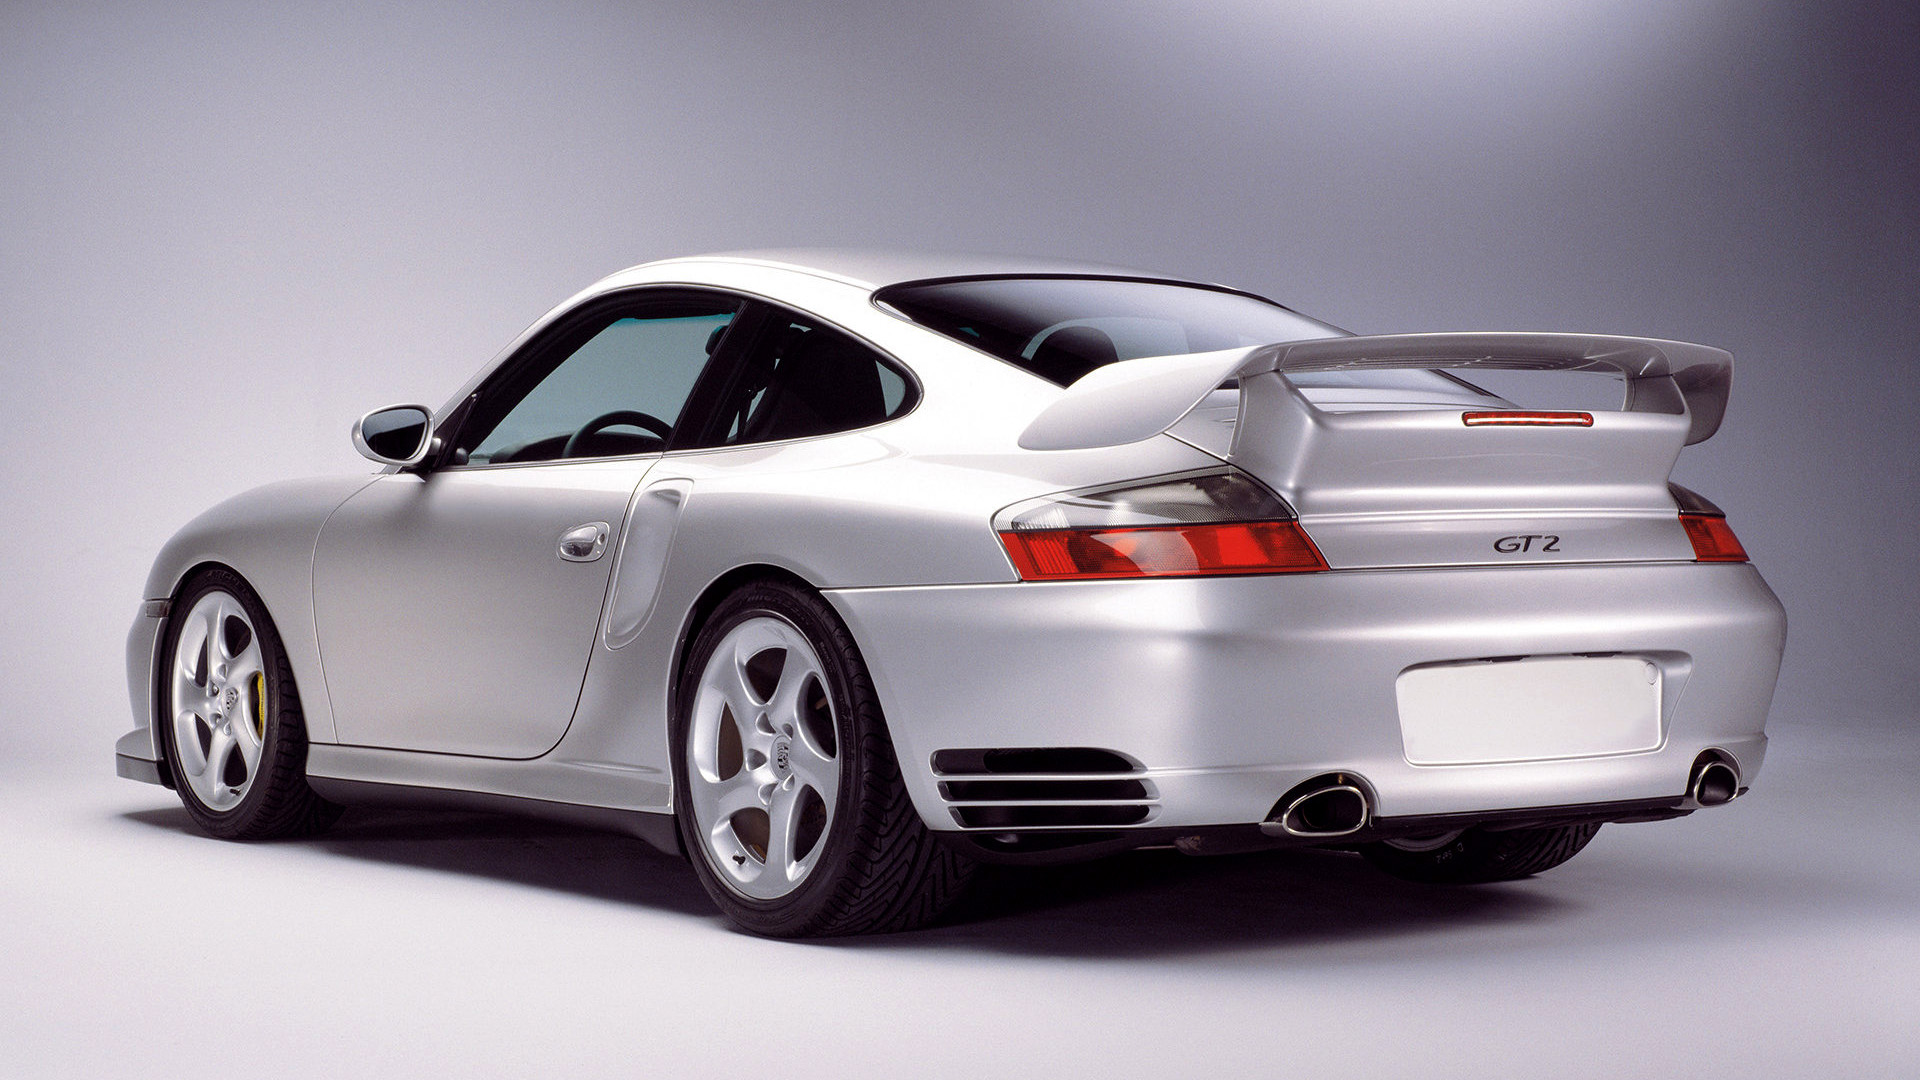  2002 Porsche 911 GT2 Wallpaper.